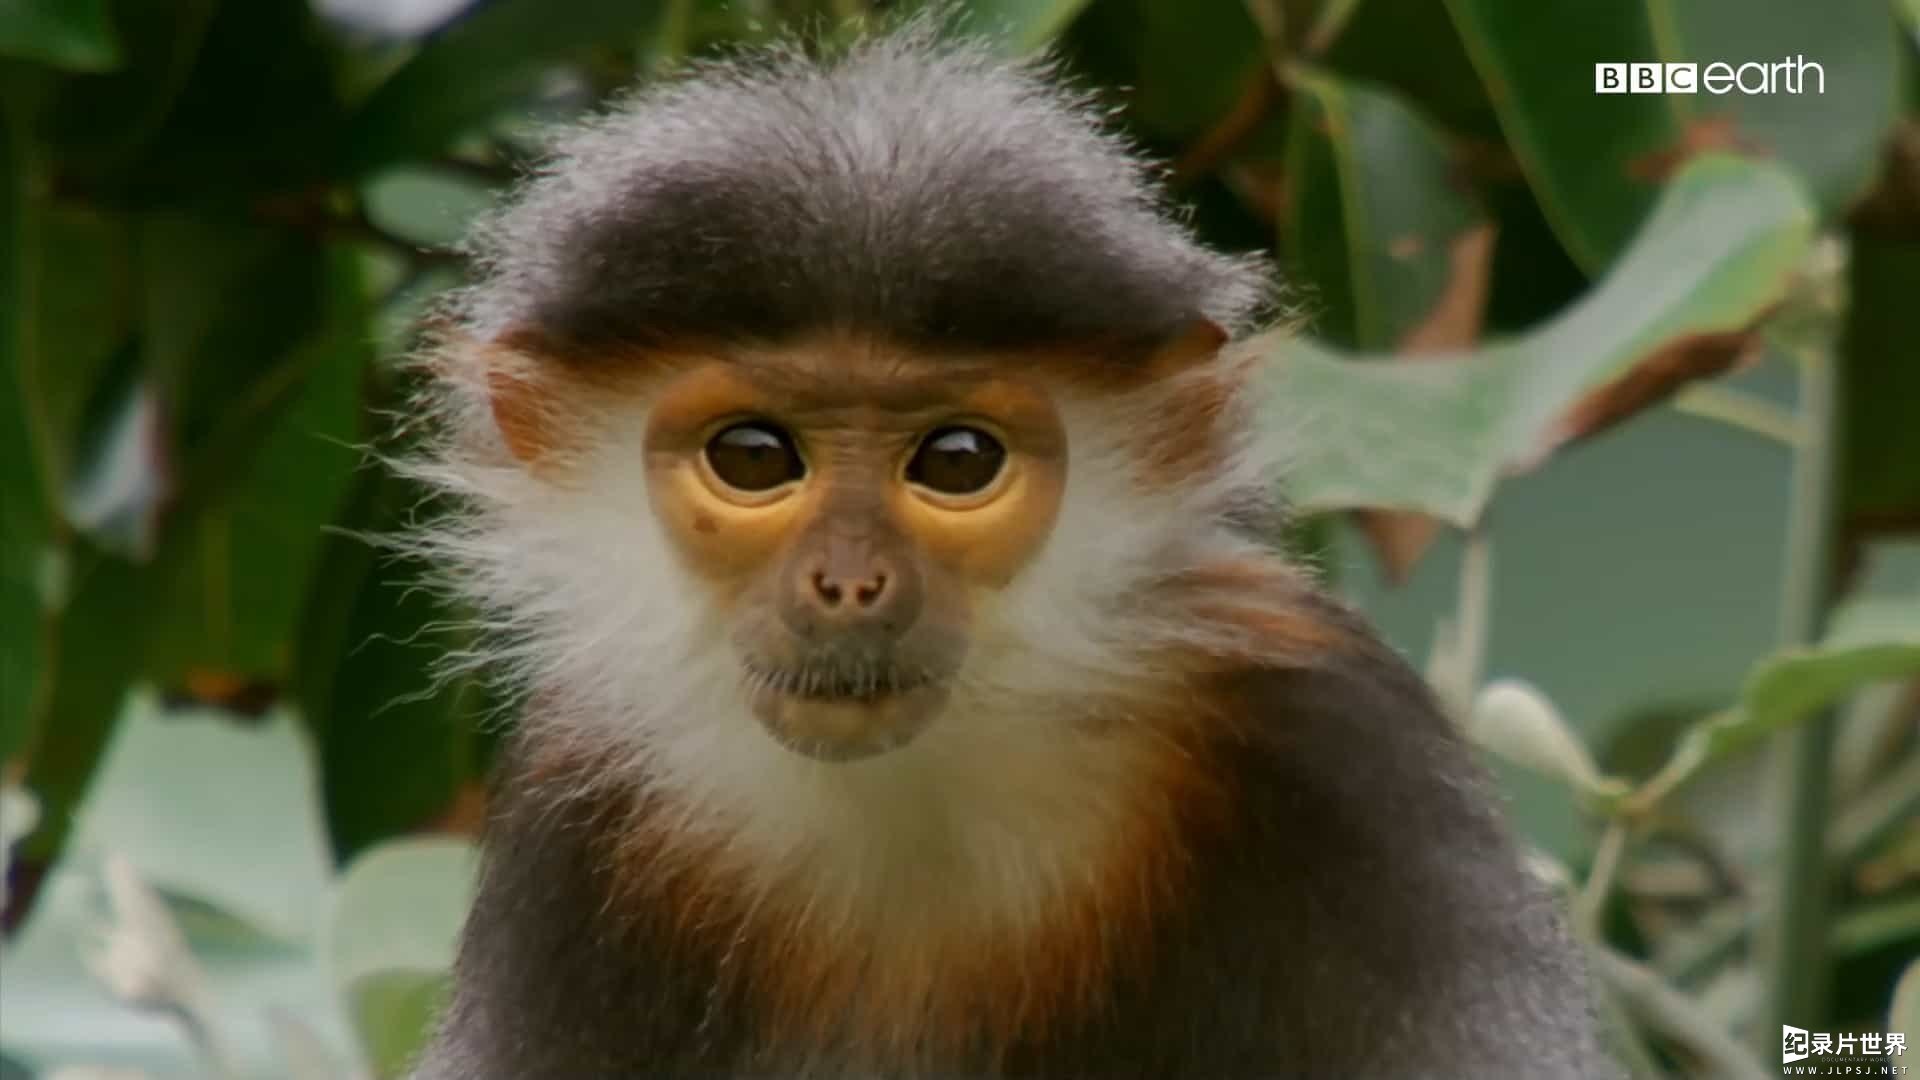 精选系列/BBC纪录片《猴子揭秘/猴子大观 Monkeys Revealed》全3集 